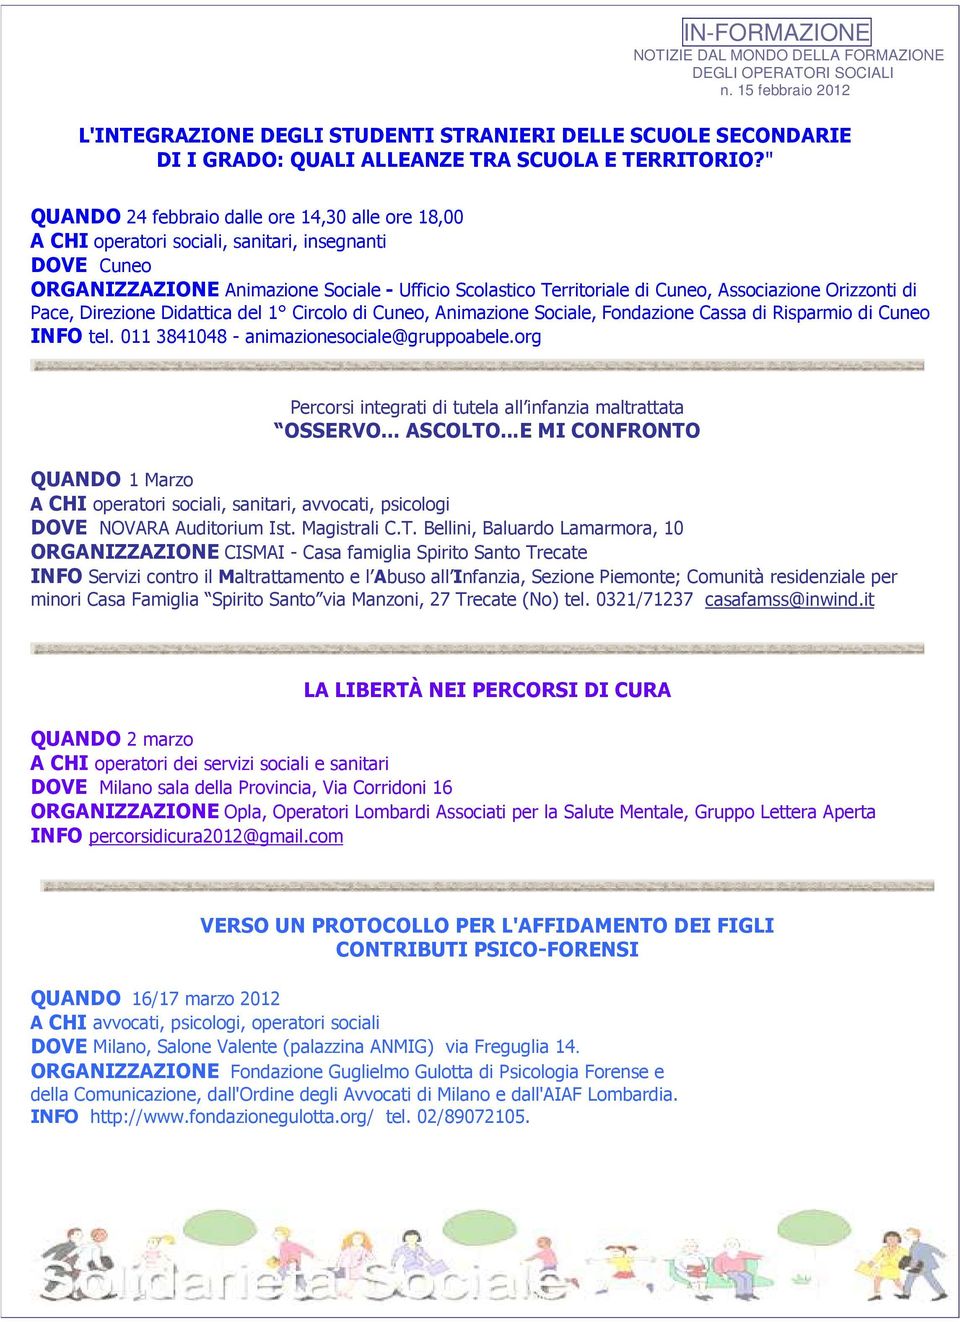 Orizzonti di Pace, Direzione Didattica del 1 Circolo di Cuneo, Animazione Sociale, Fondazione Cassa di Risparmio di Cuneo INFO tel. 011 3841048 - animazionesociale@gruppoabele.